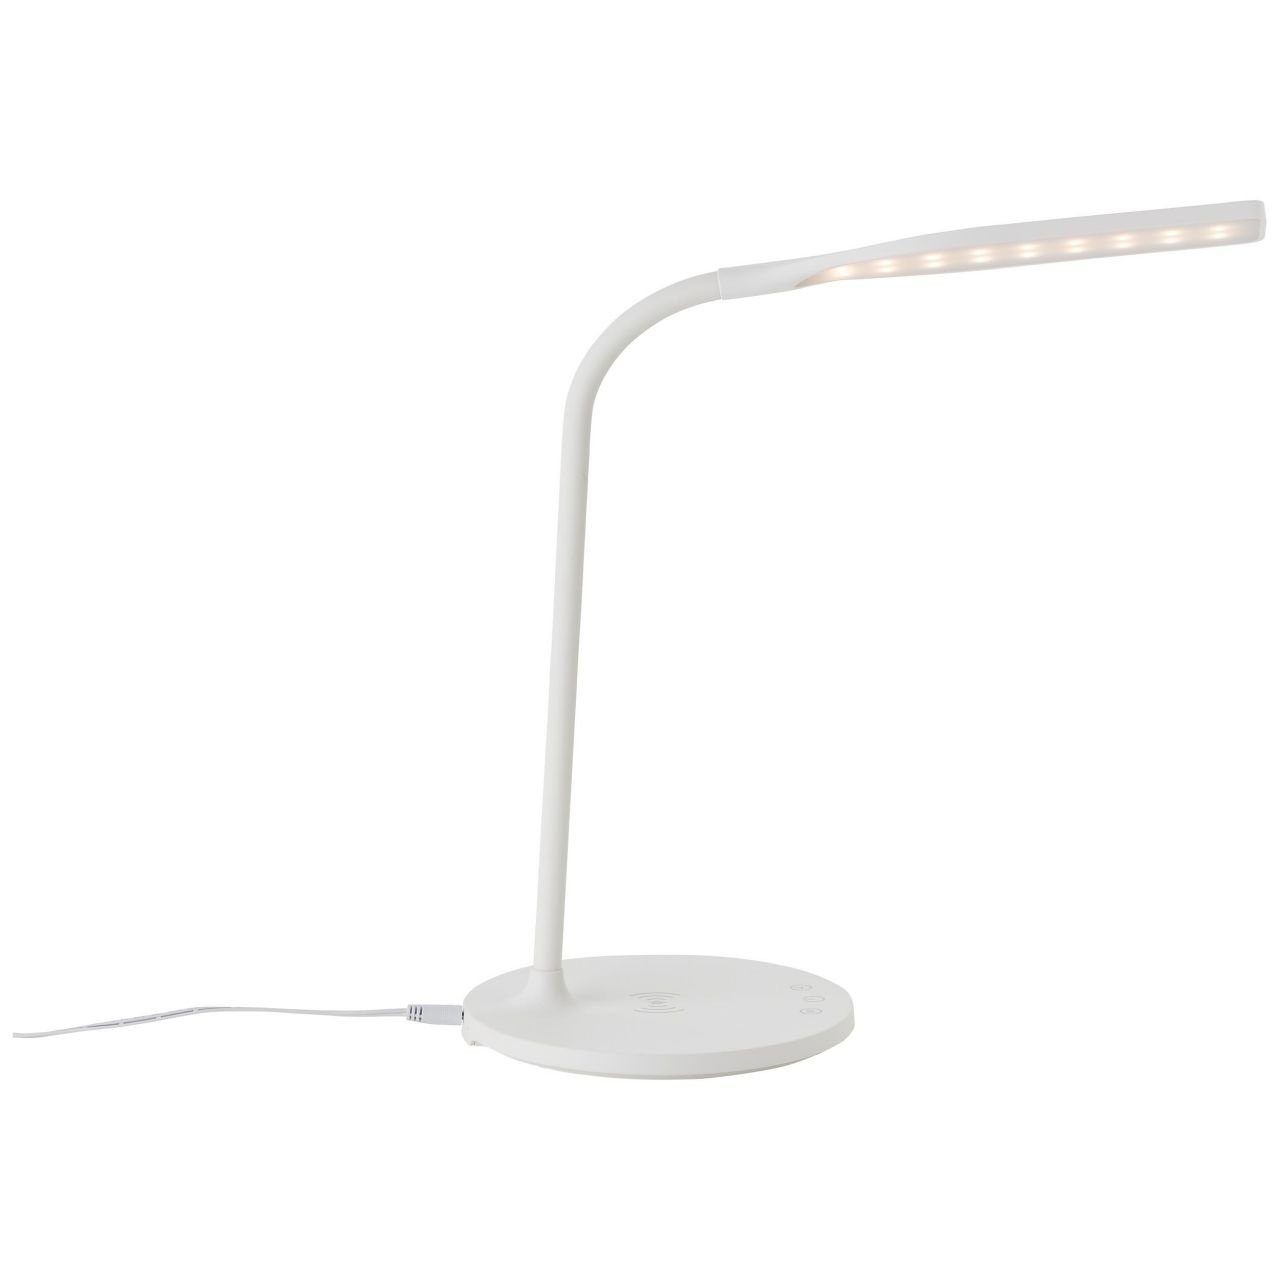 Tischleuchte mit Lampe, 1x Joni, 3000-5400K, int Tischleuchte Induktionsladeschale Brilliant LED LED Joni weiß,